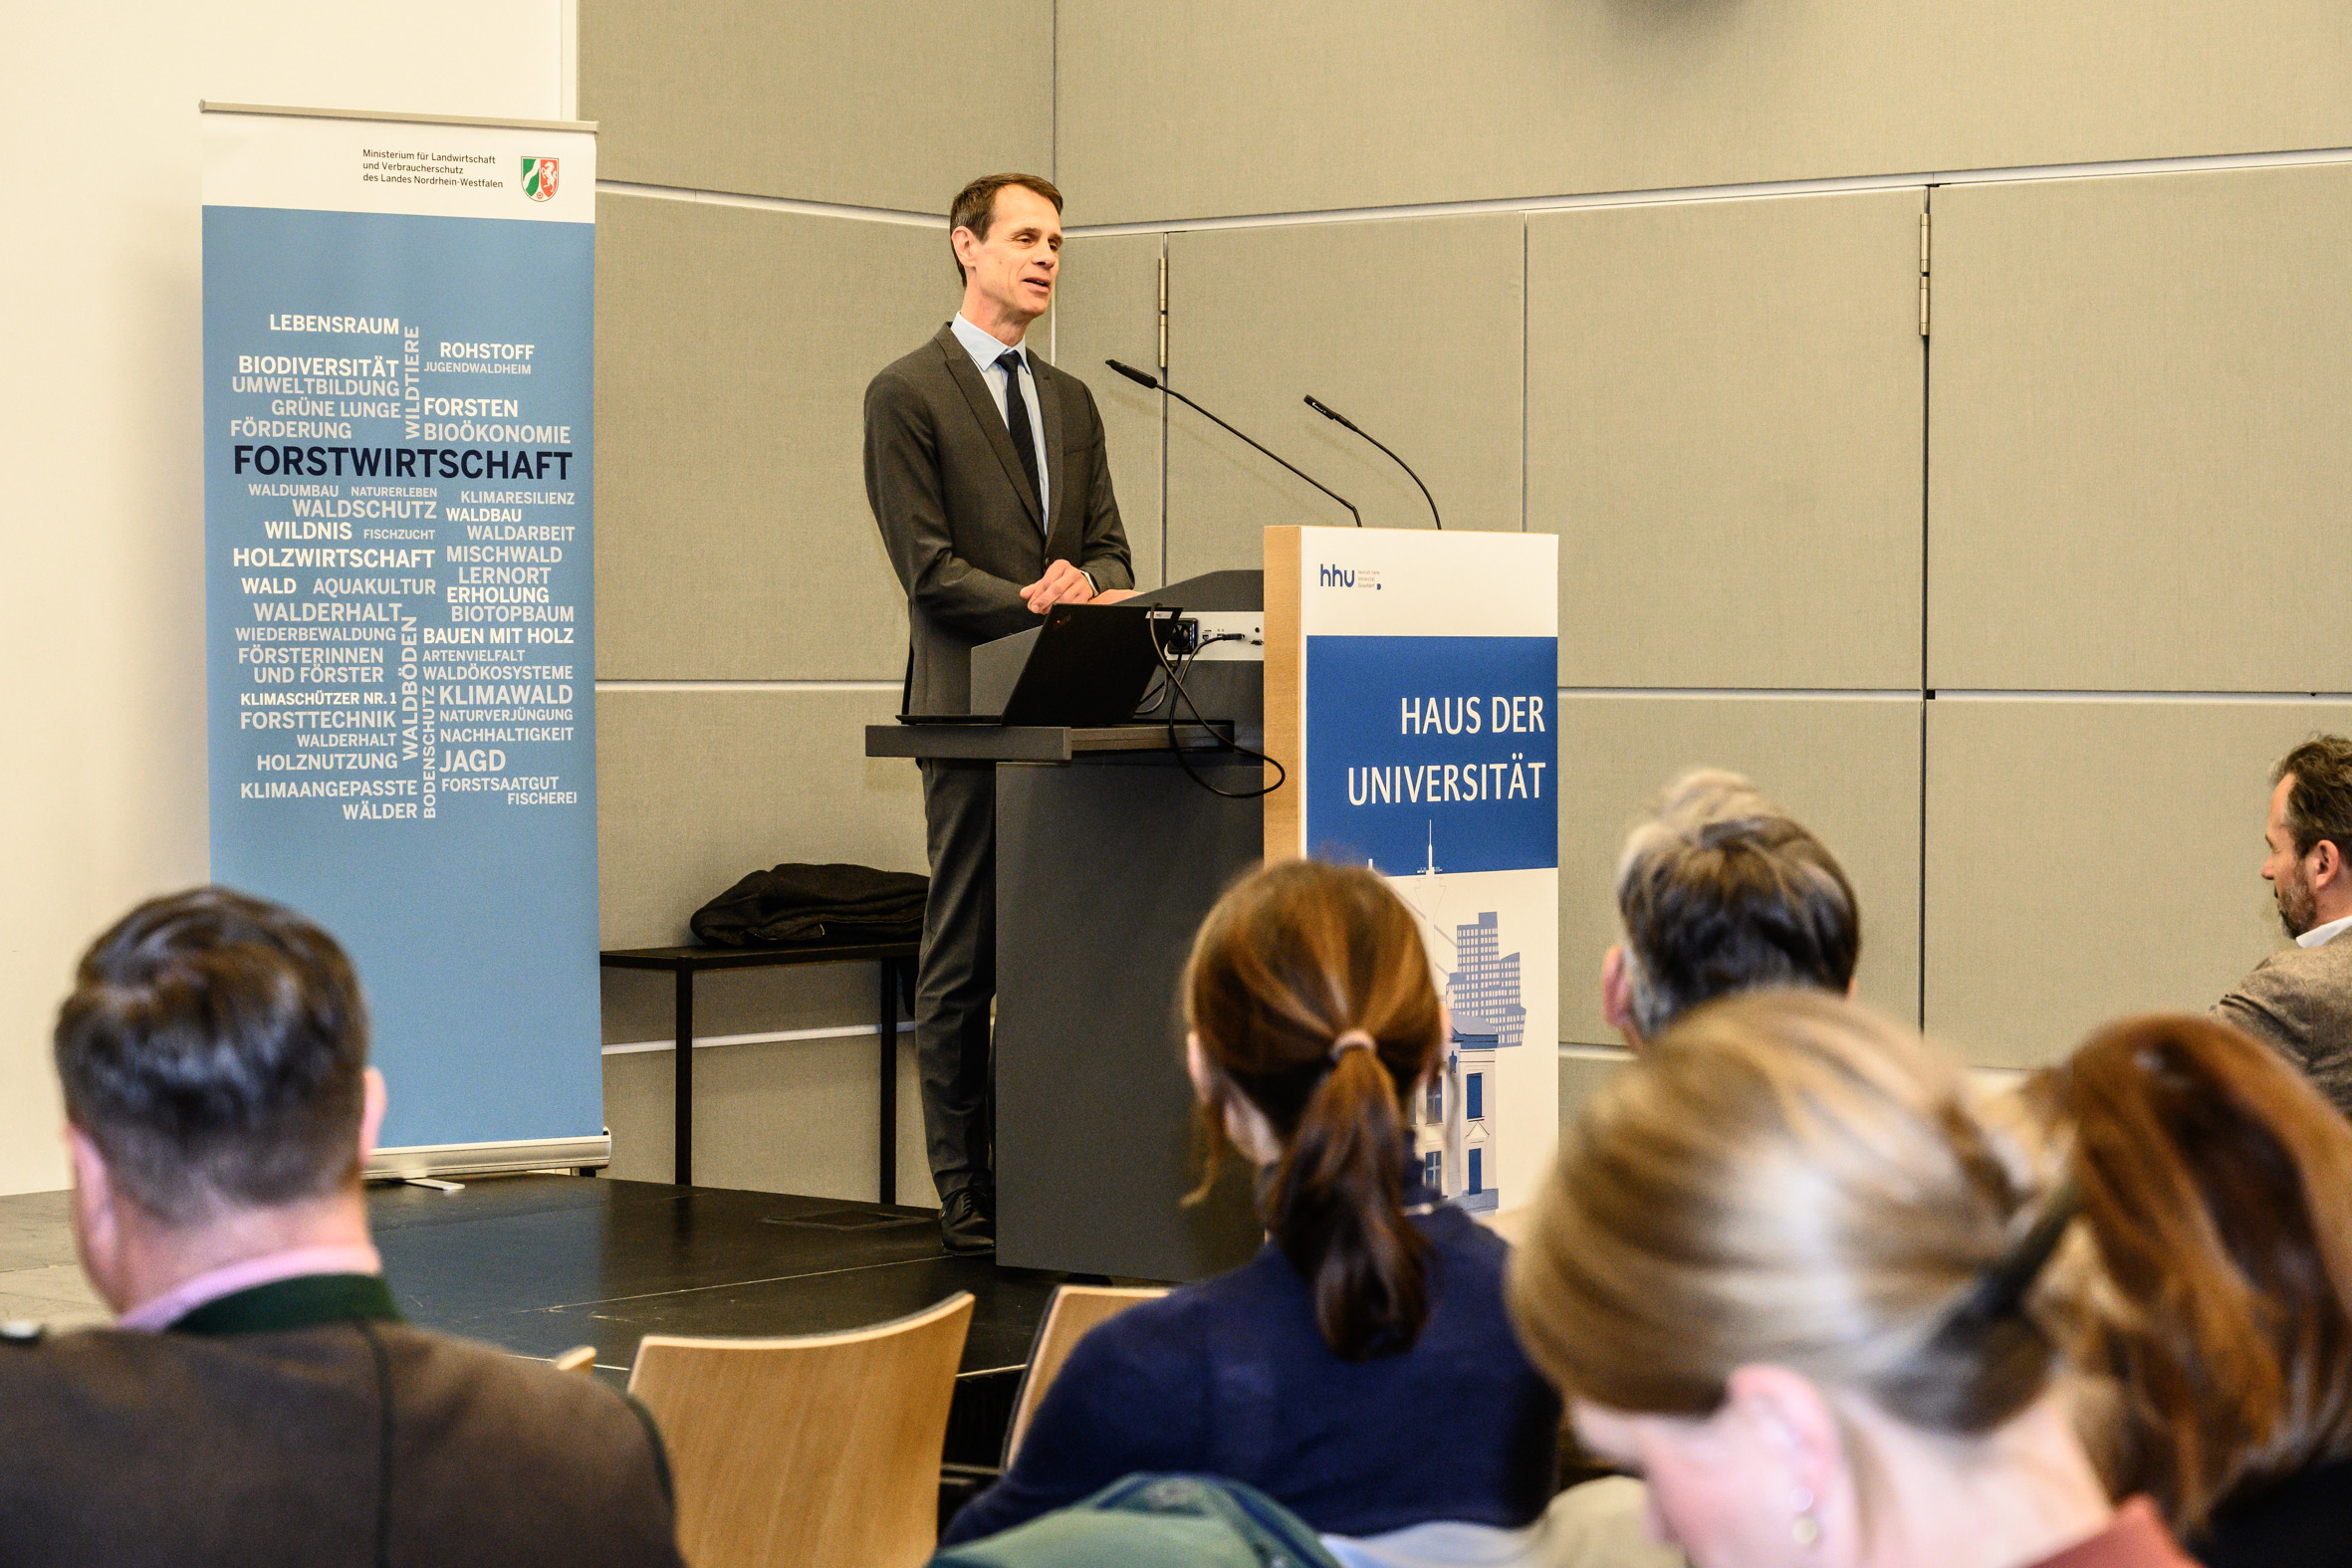 Gemeinsam für den Wald in Nordrhein-Westfalen: Erfolgreiche Dialogveranstaltung zur Erstellung der nordrhein-westfälischen Waldstrategie